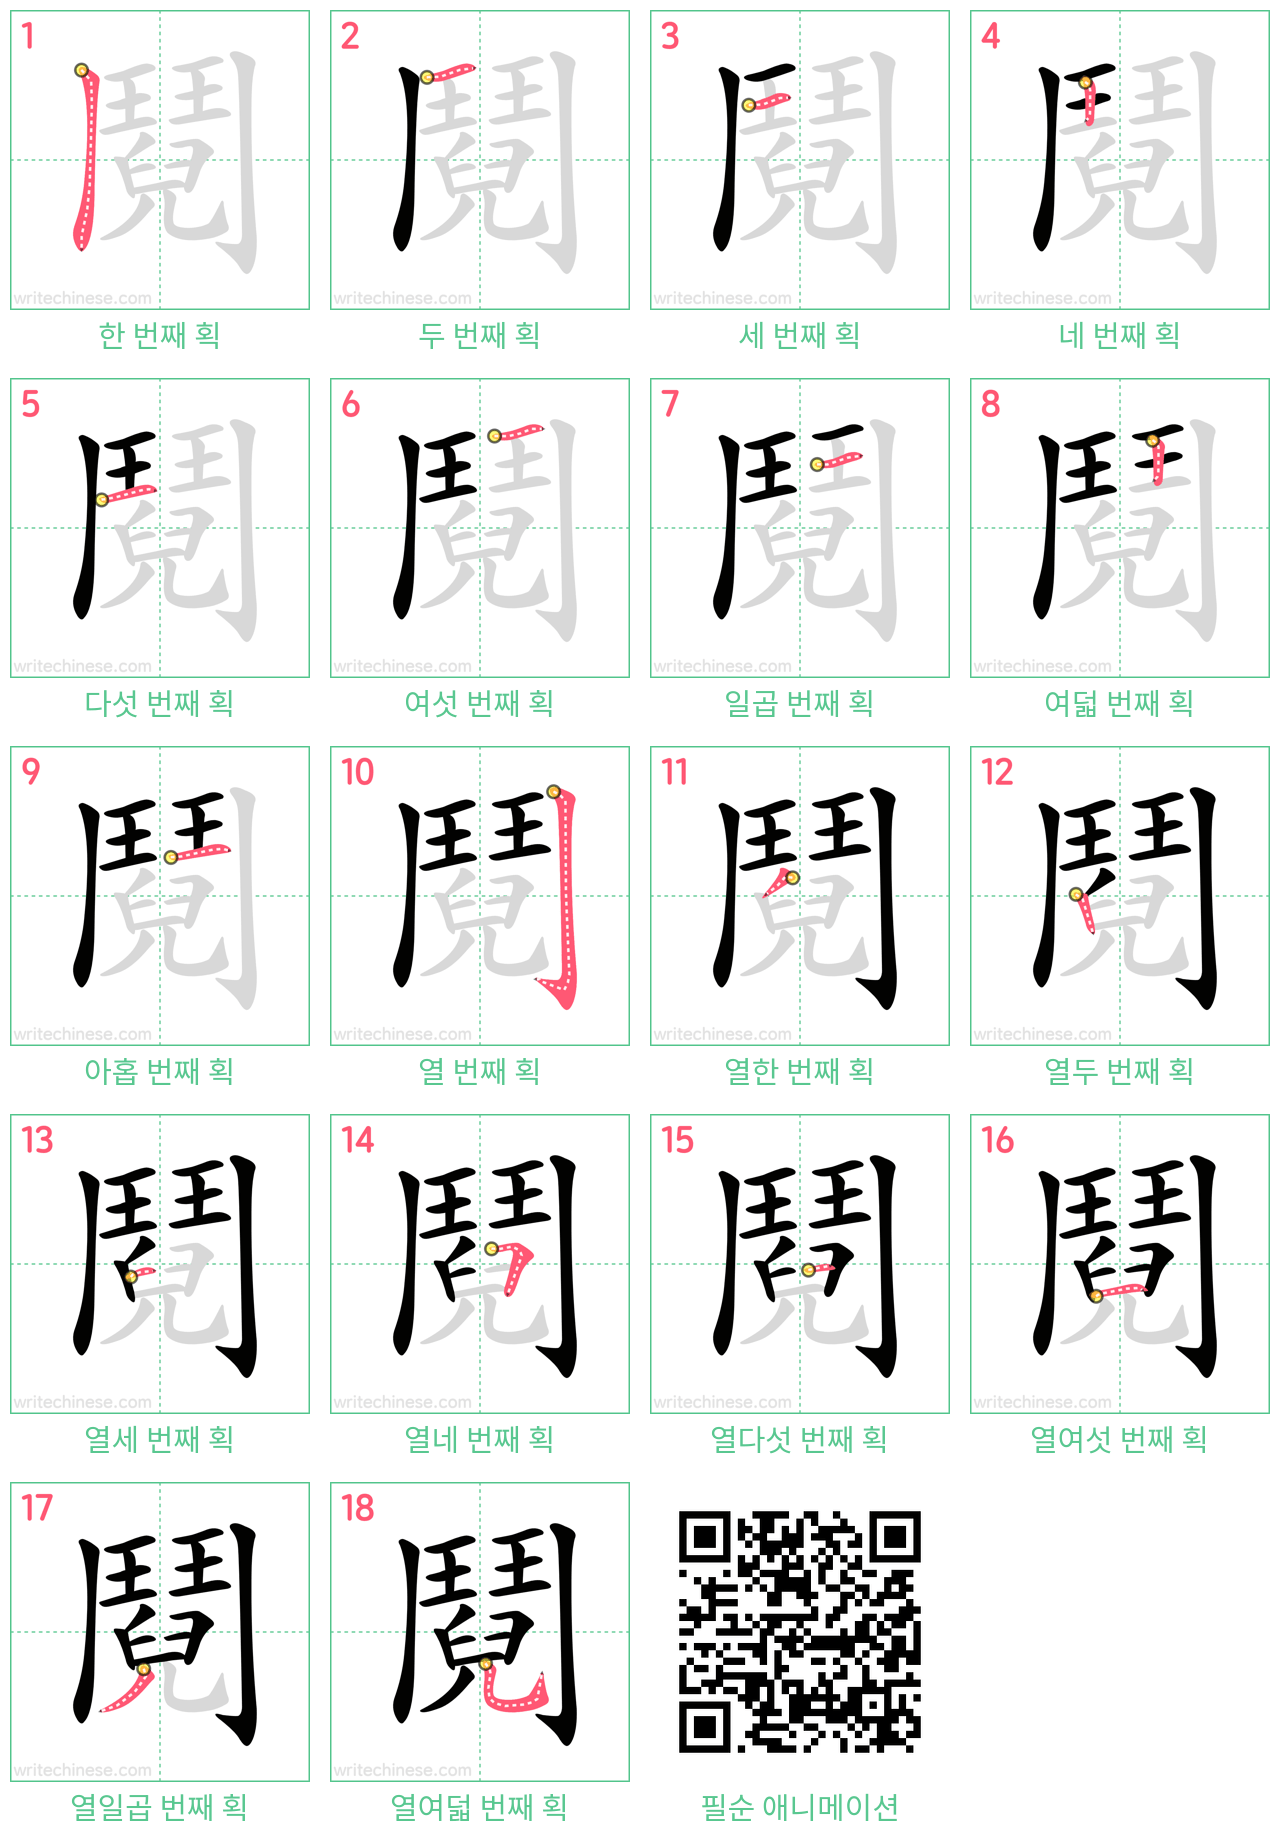 鬩 step-by-step stroke order diagrams